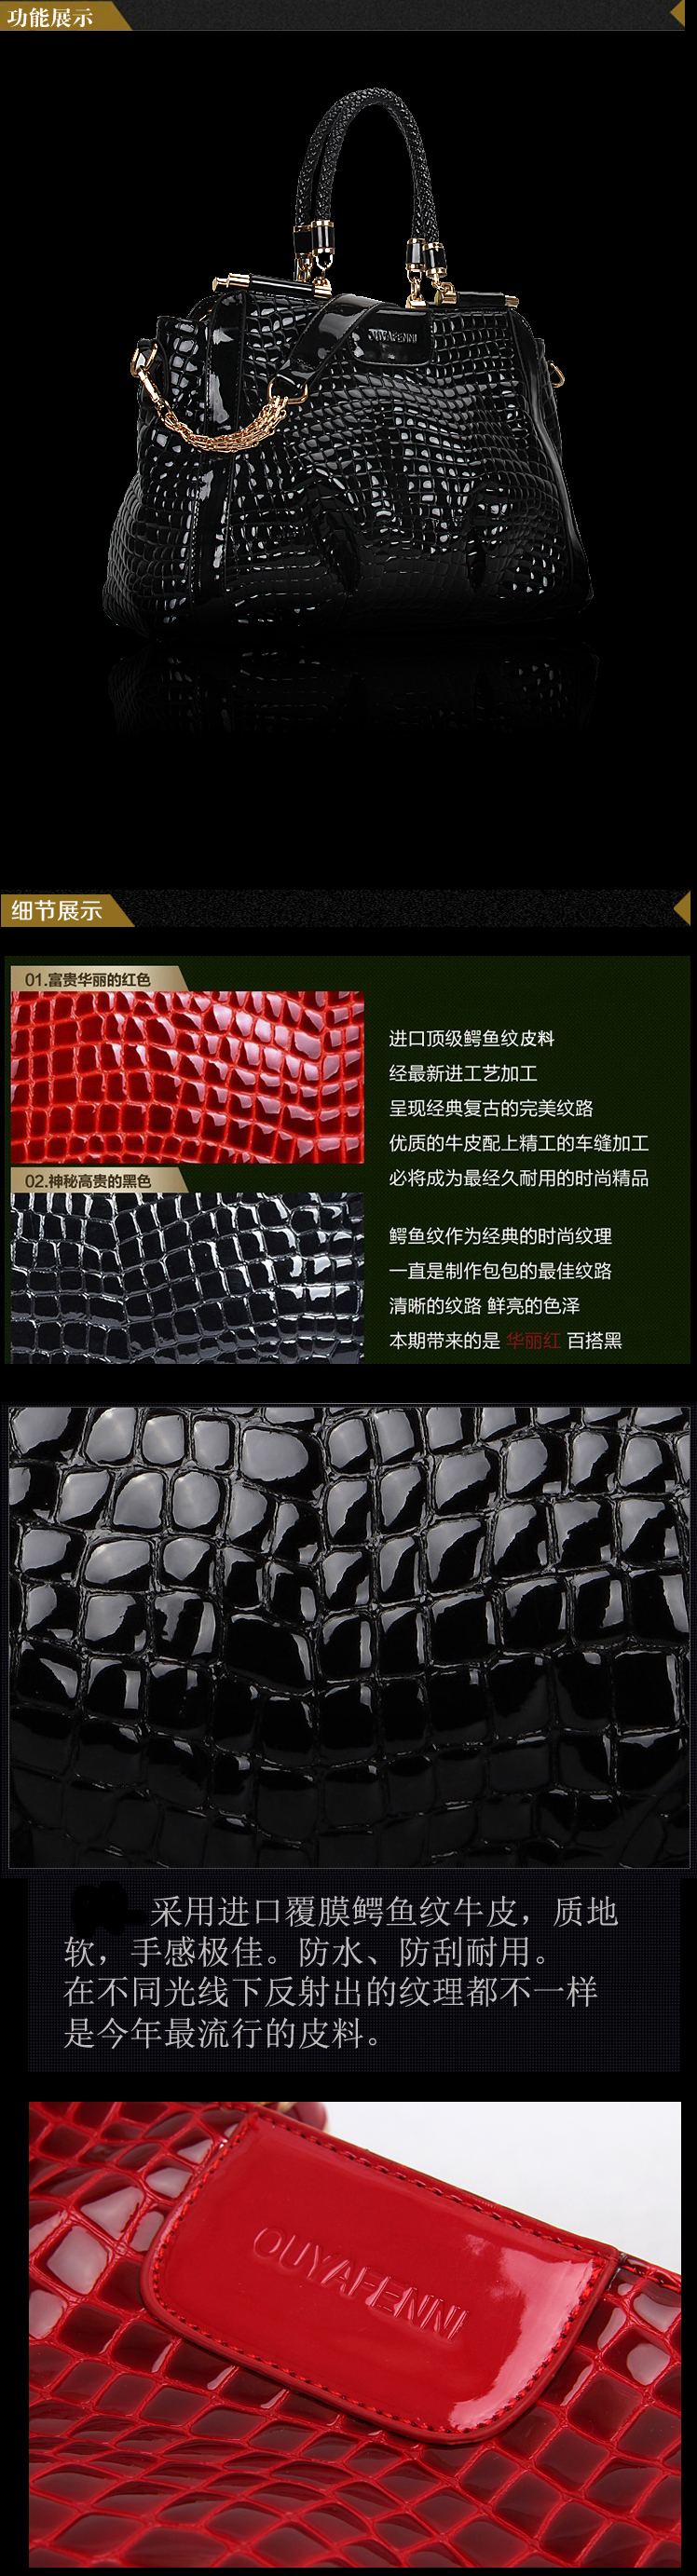 Mssefn2015新品时尚女包欧美潮流鳄鱼纹漆皮手提包包7003